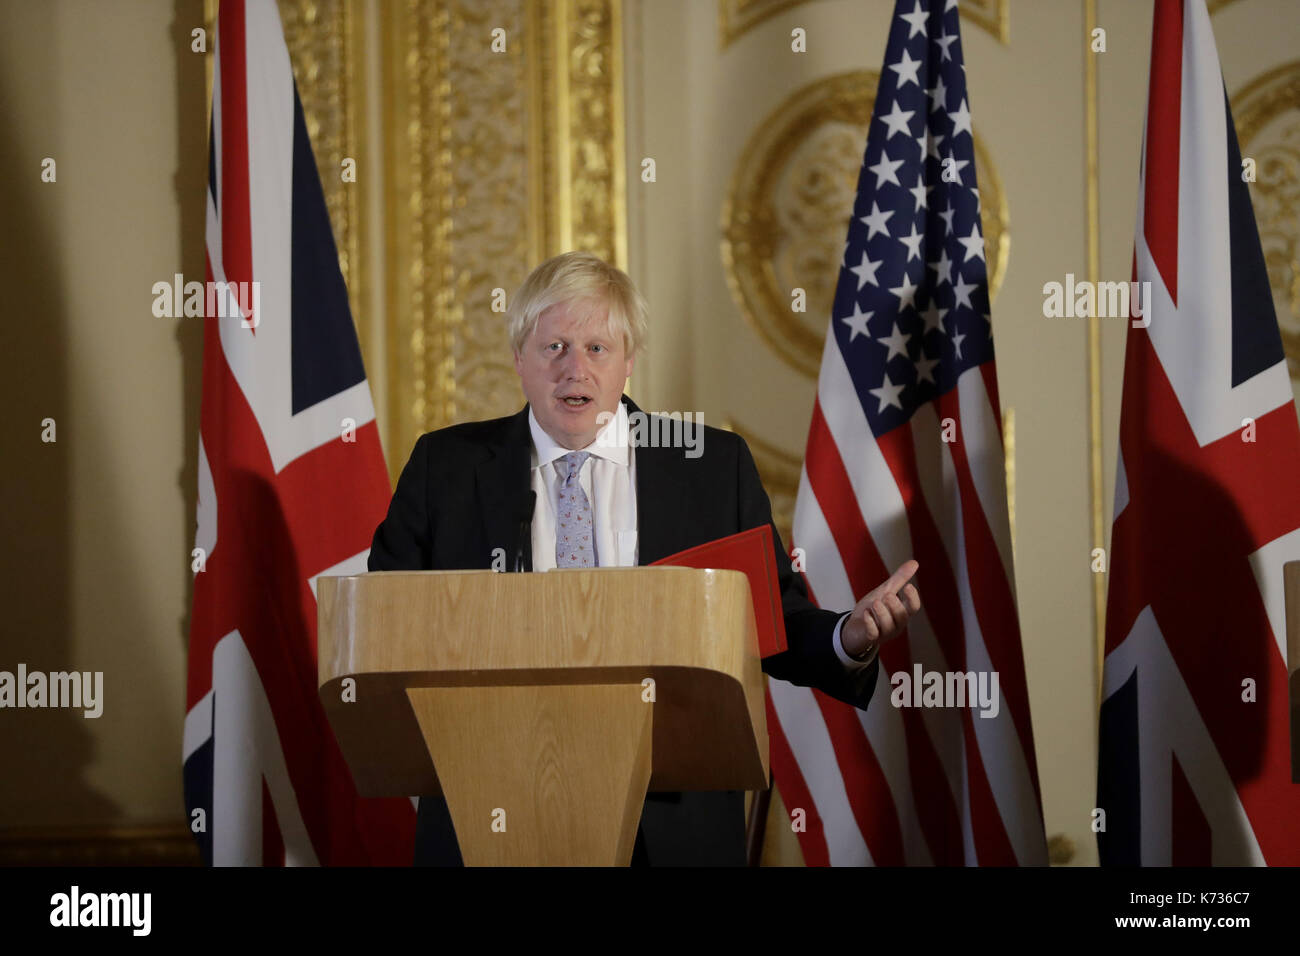 Segretario di Stato per gli affari esteri boris johnson durante una conferenza stampa dopo un incontro con il segretario di Stato statunitense rex tillerson sulla Libia a Lancaster House di Londra. Foto Stock